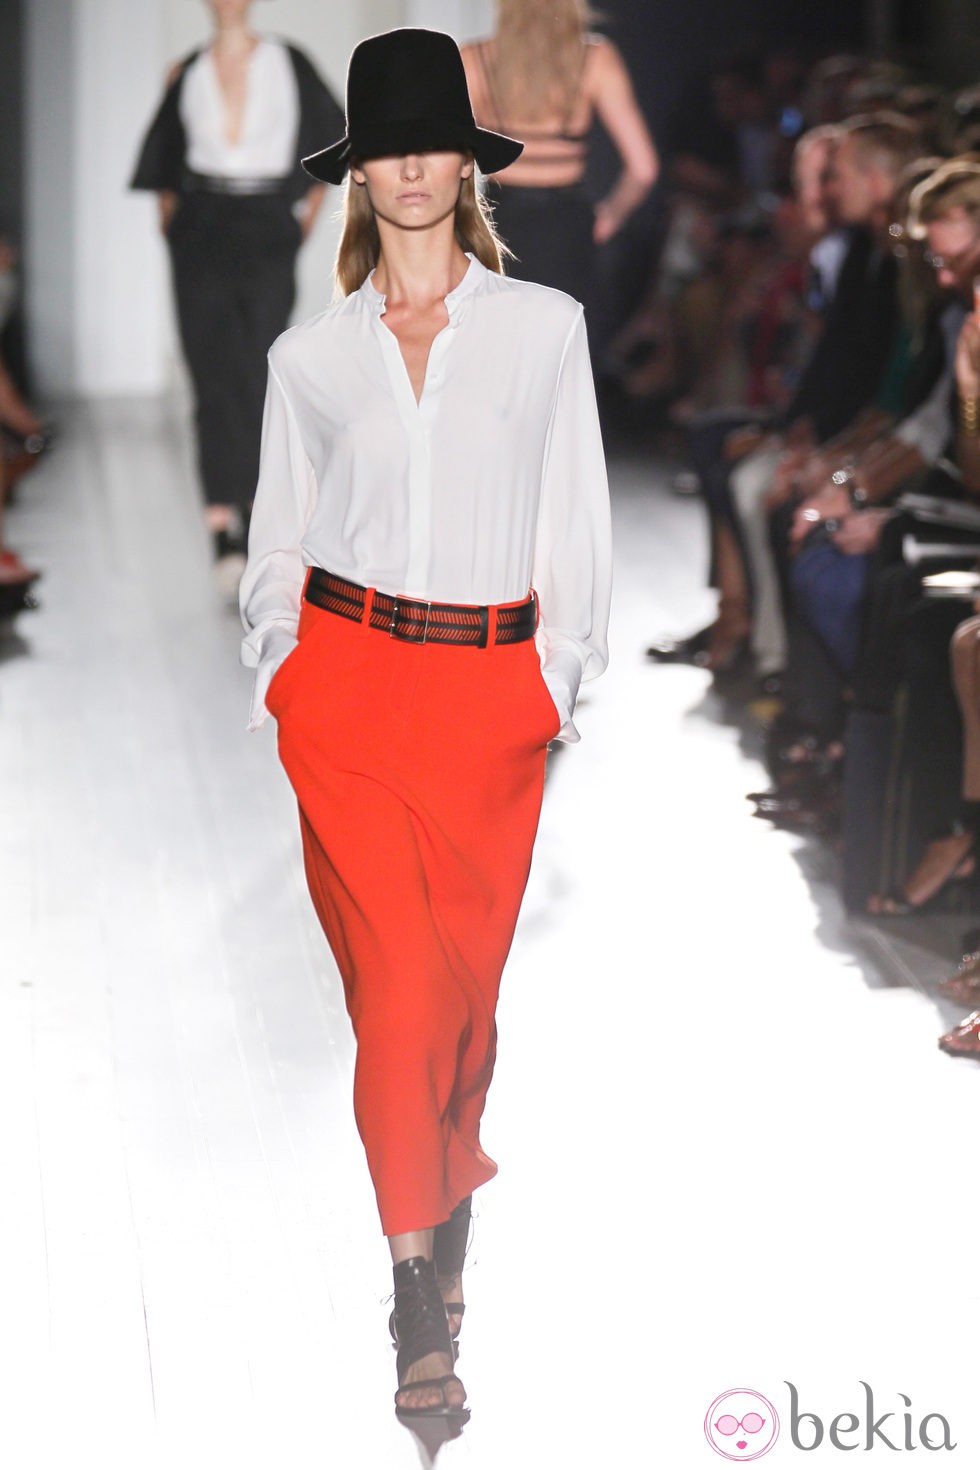 Pantalón rojo de la colección primavera/verano 2013 de Victoria Beckham en la Nueva York Fashion Week